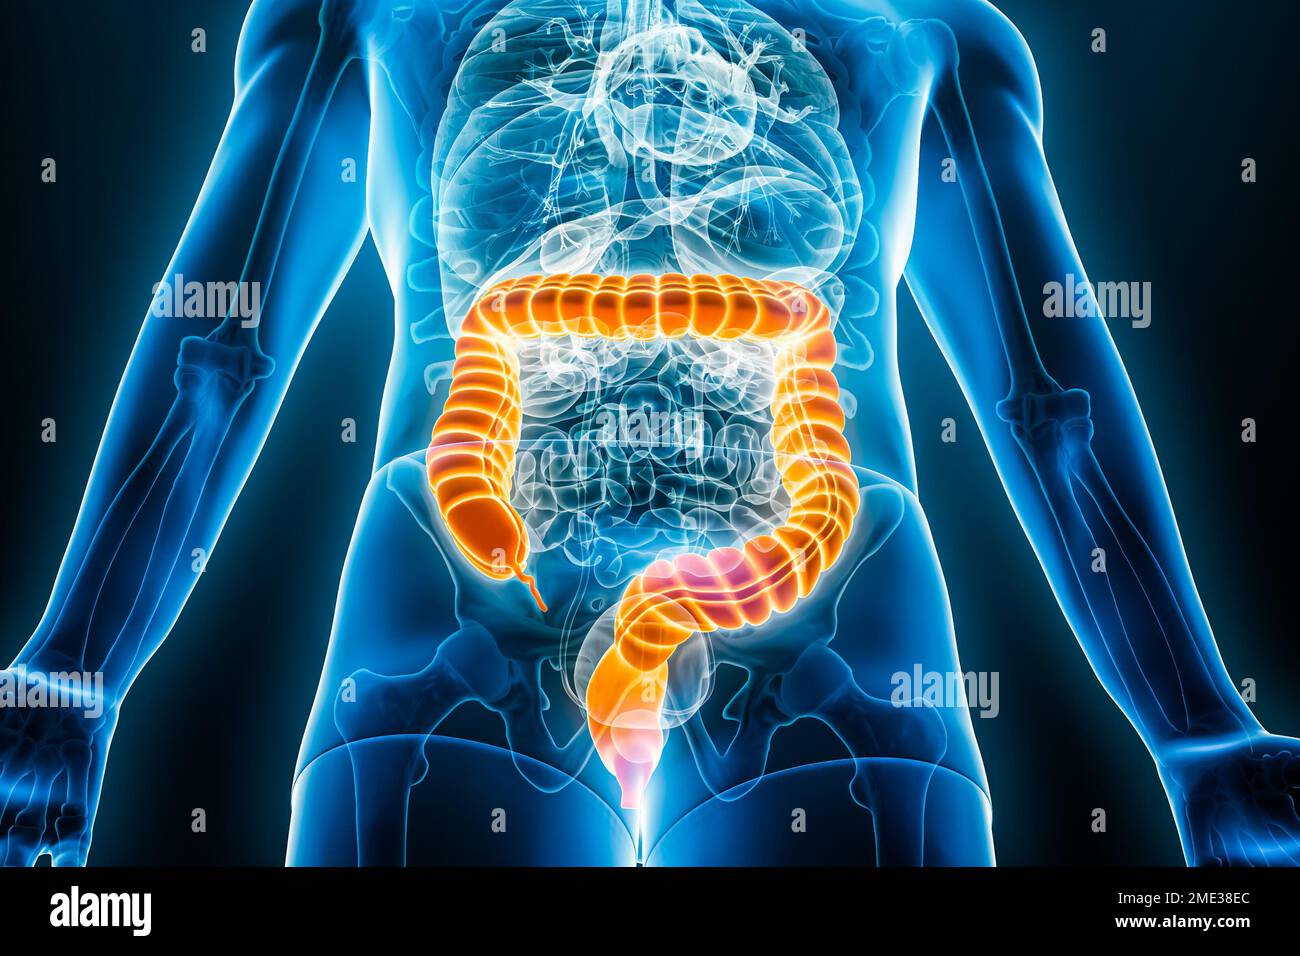 Vista anterior o frontal de rayos X del intestino grueso o colon 3D que representa la ilustración con contornos del cuerpo masculino. Anatomía humana, intestinos, médico, biología, sc Foto de stock